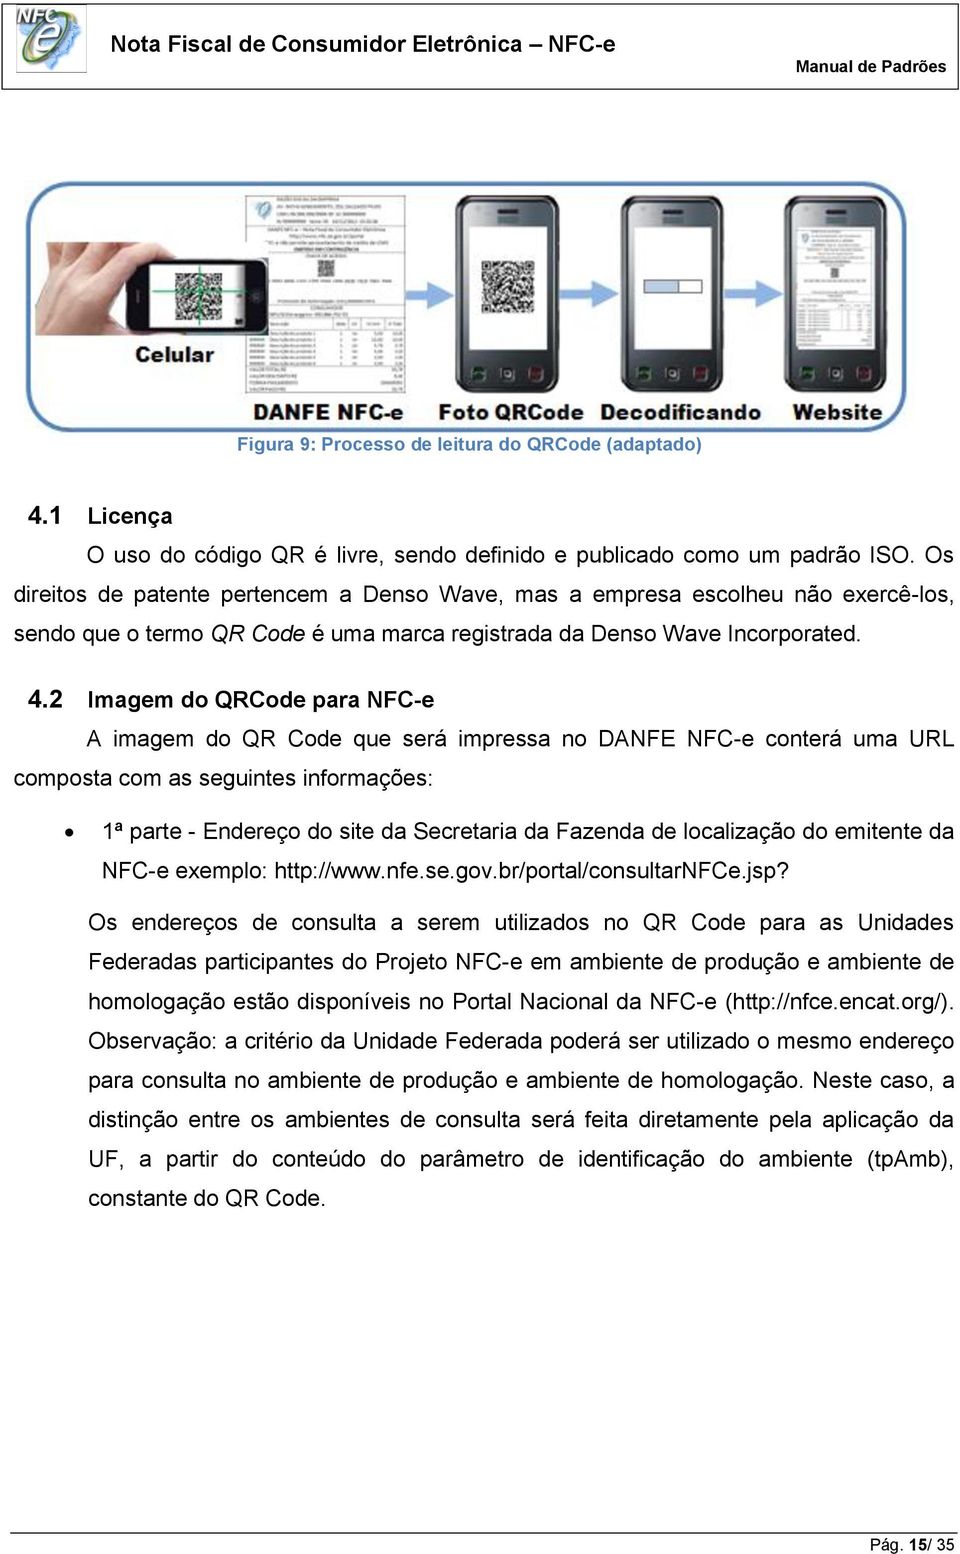 2 Imagem do QRCode para NFC-e A imagem do QR Code que será impressa no DANFE NFC-e conterá uma URL composta com as seguintes informações: 1ª parte - Endereço do site da Secretaria da Fazenda de